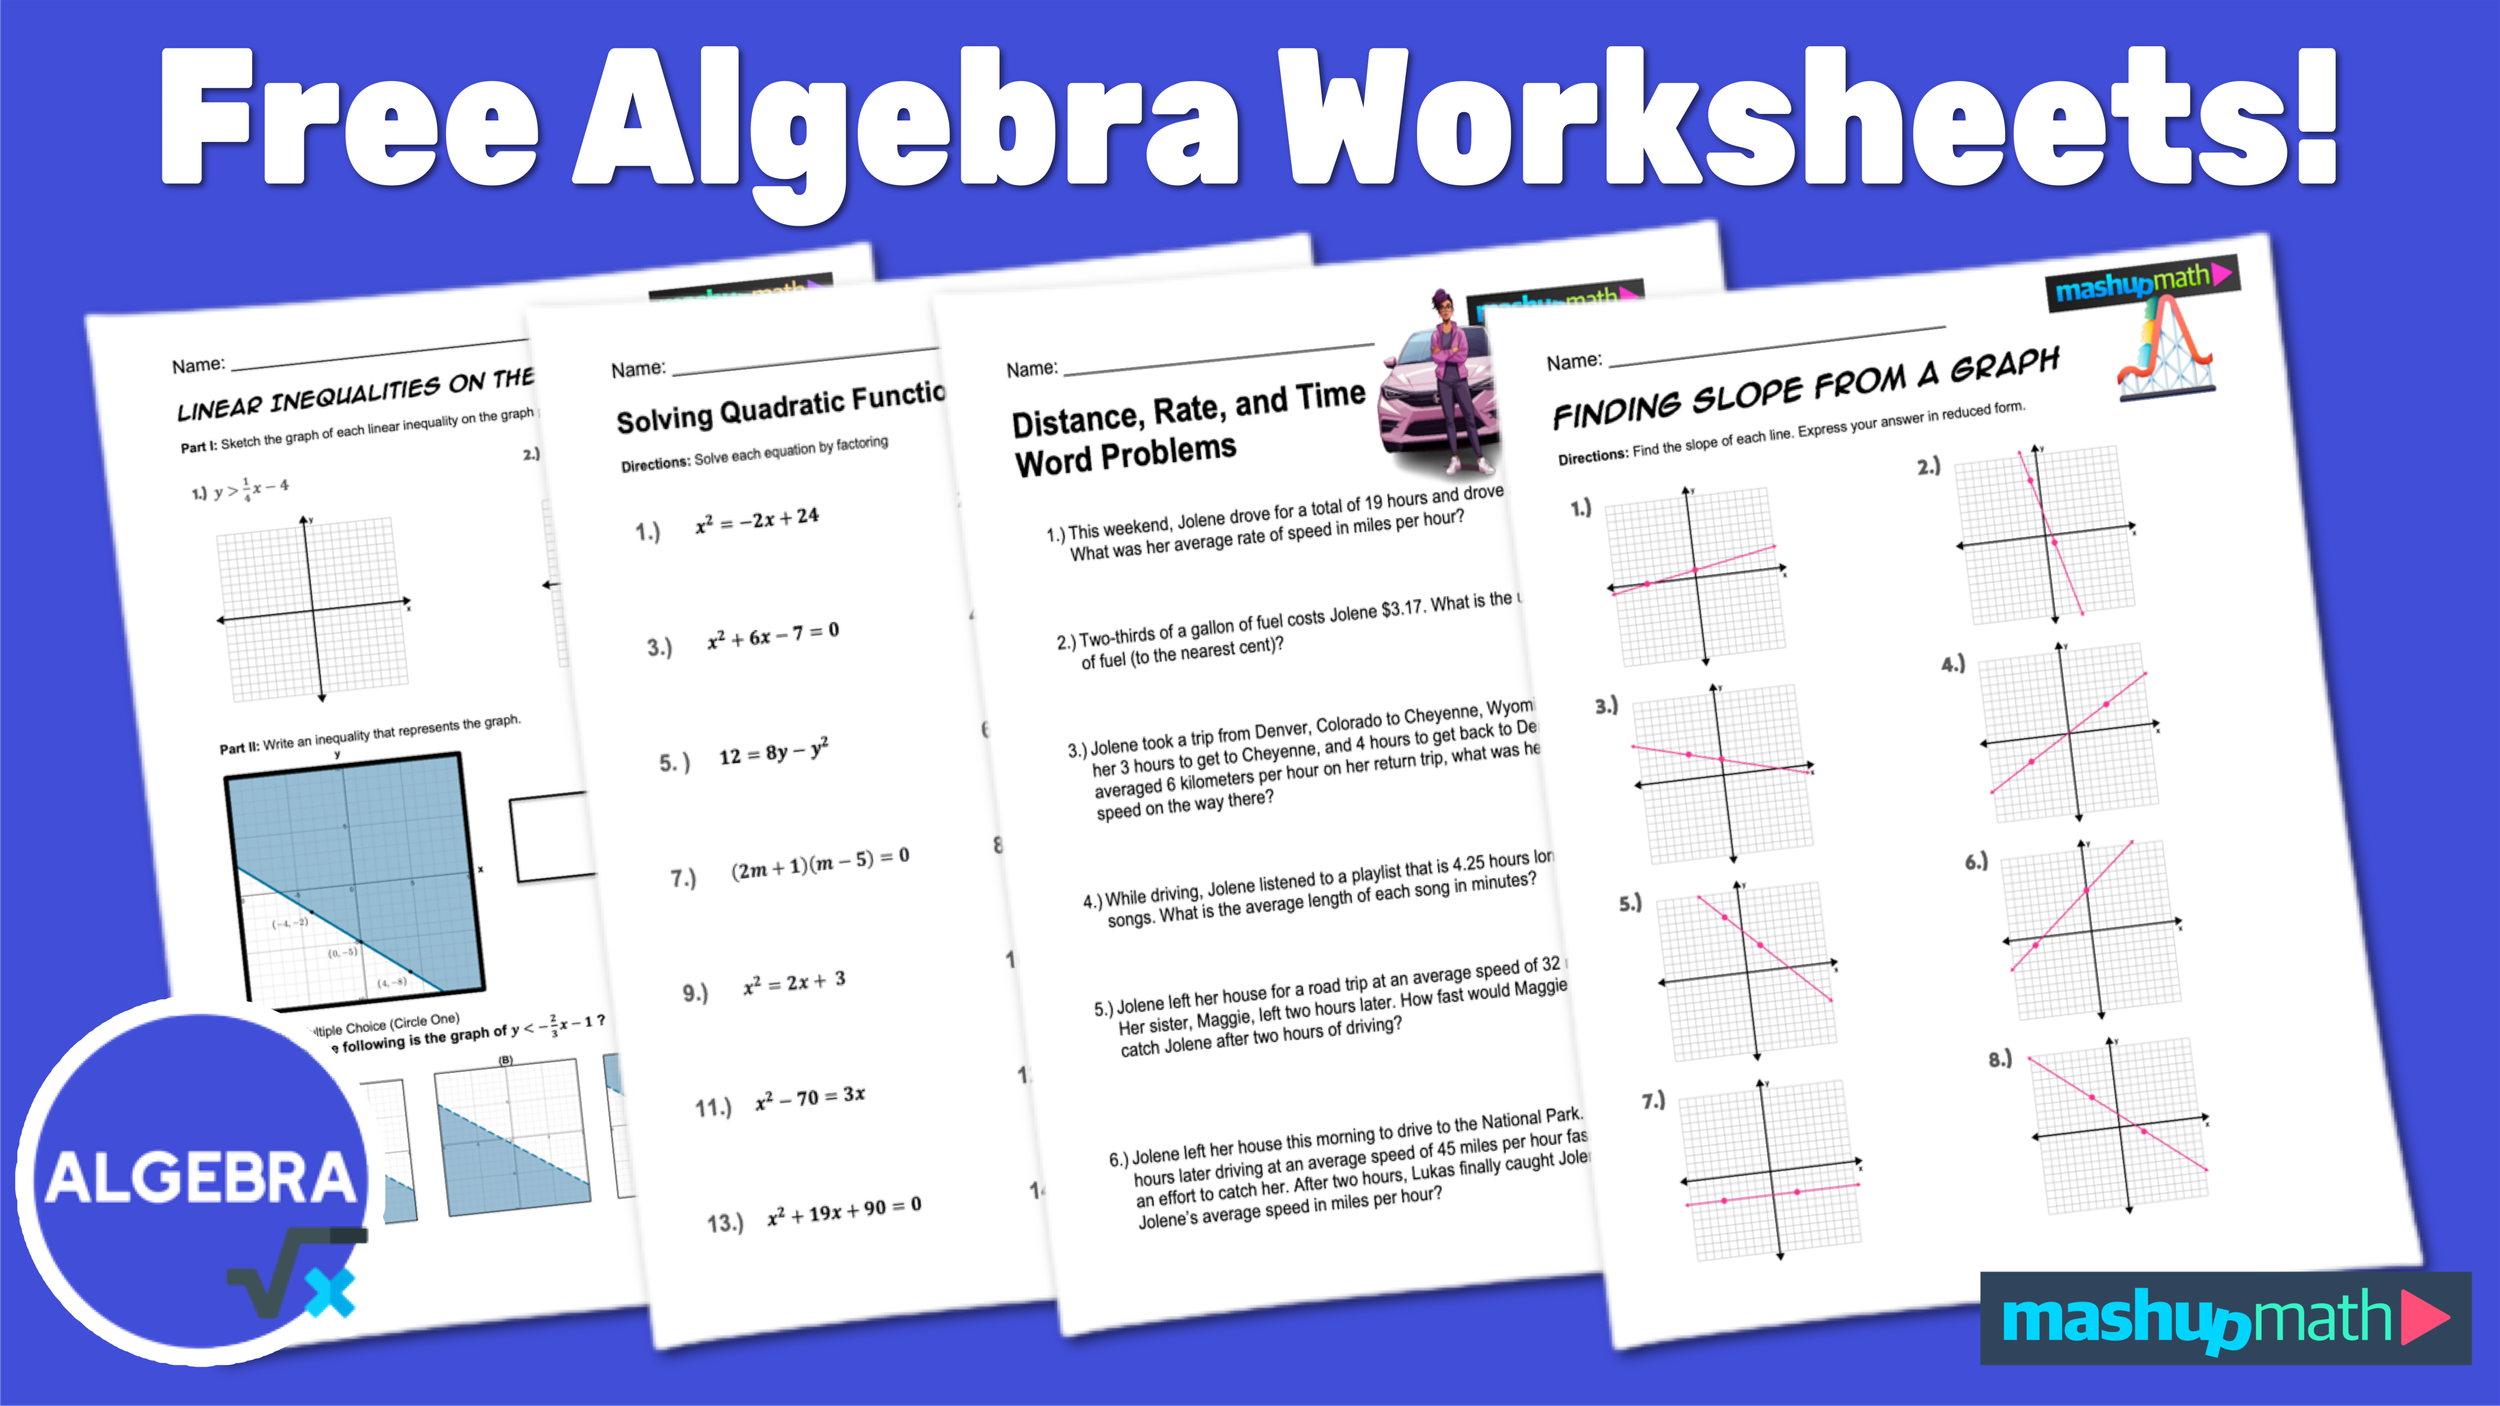 Algebra-Worksheets-Banner.png